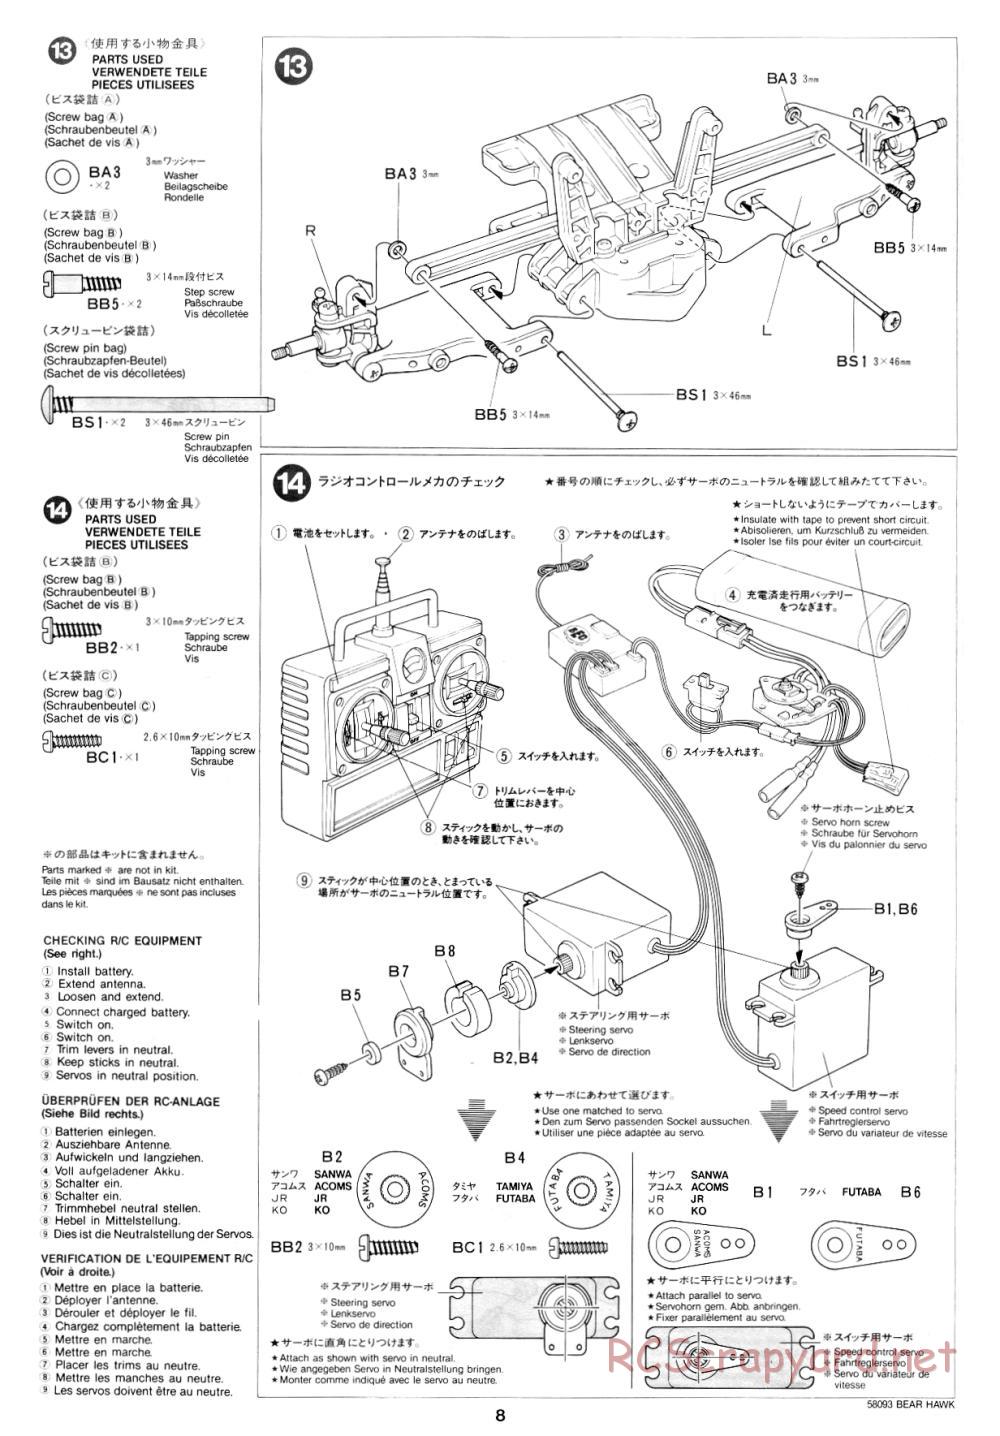 Tamiya - Bear Hawk - 58093 - Manual - Page 8